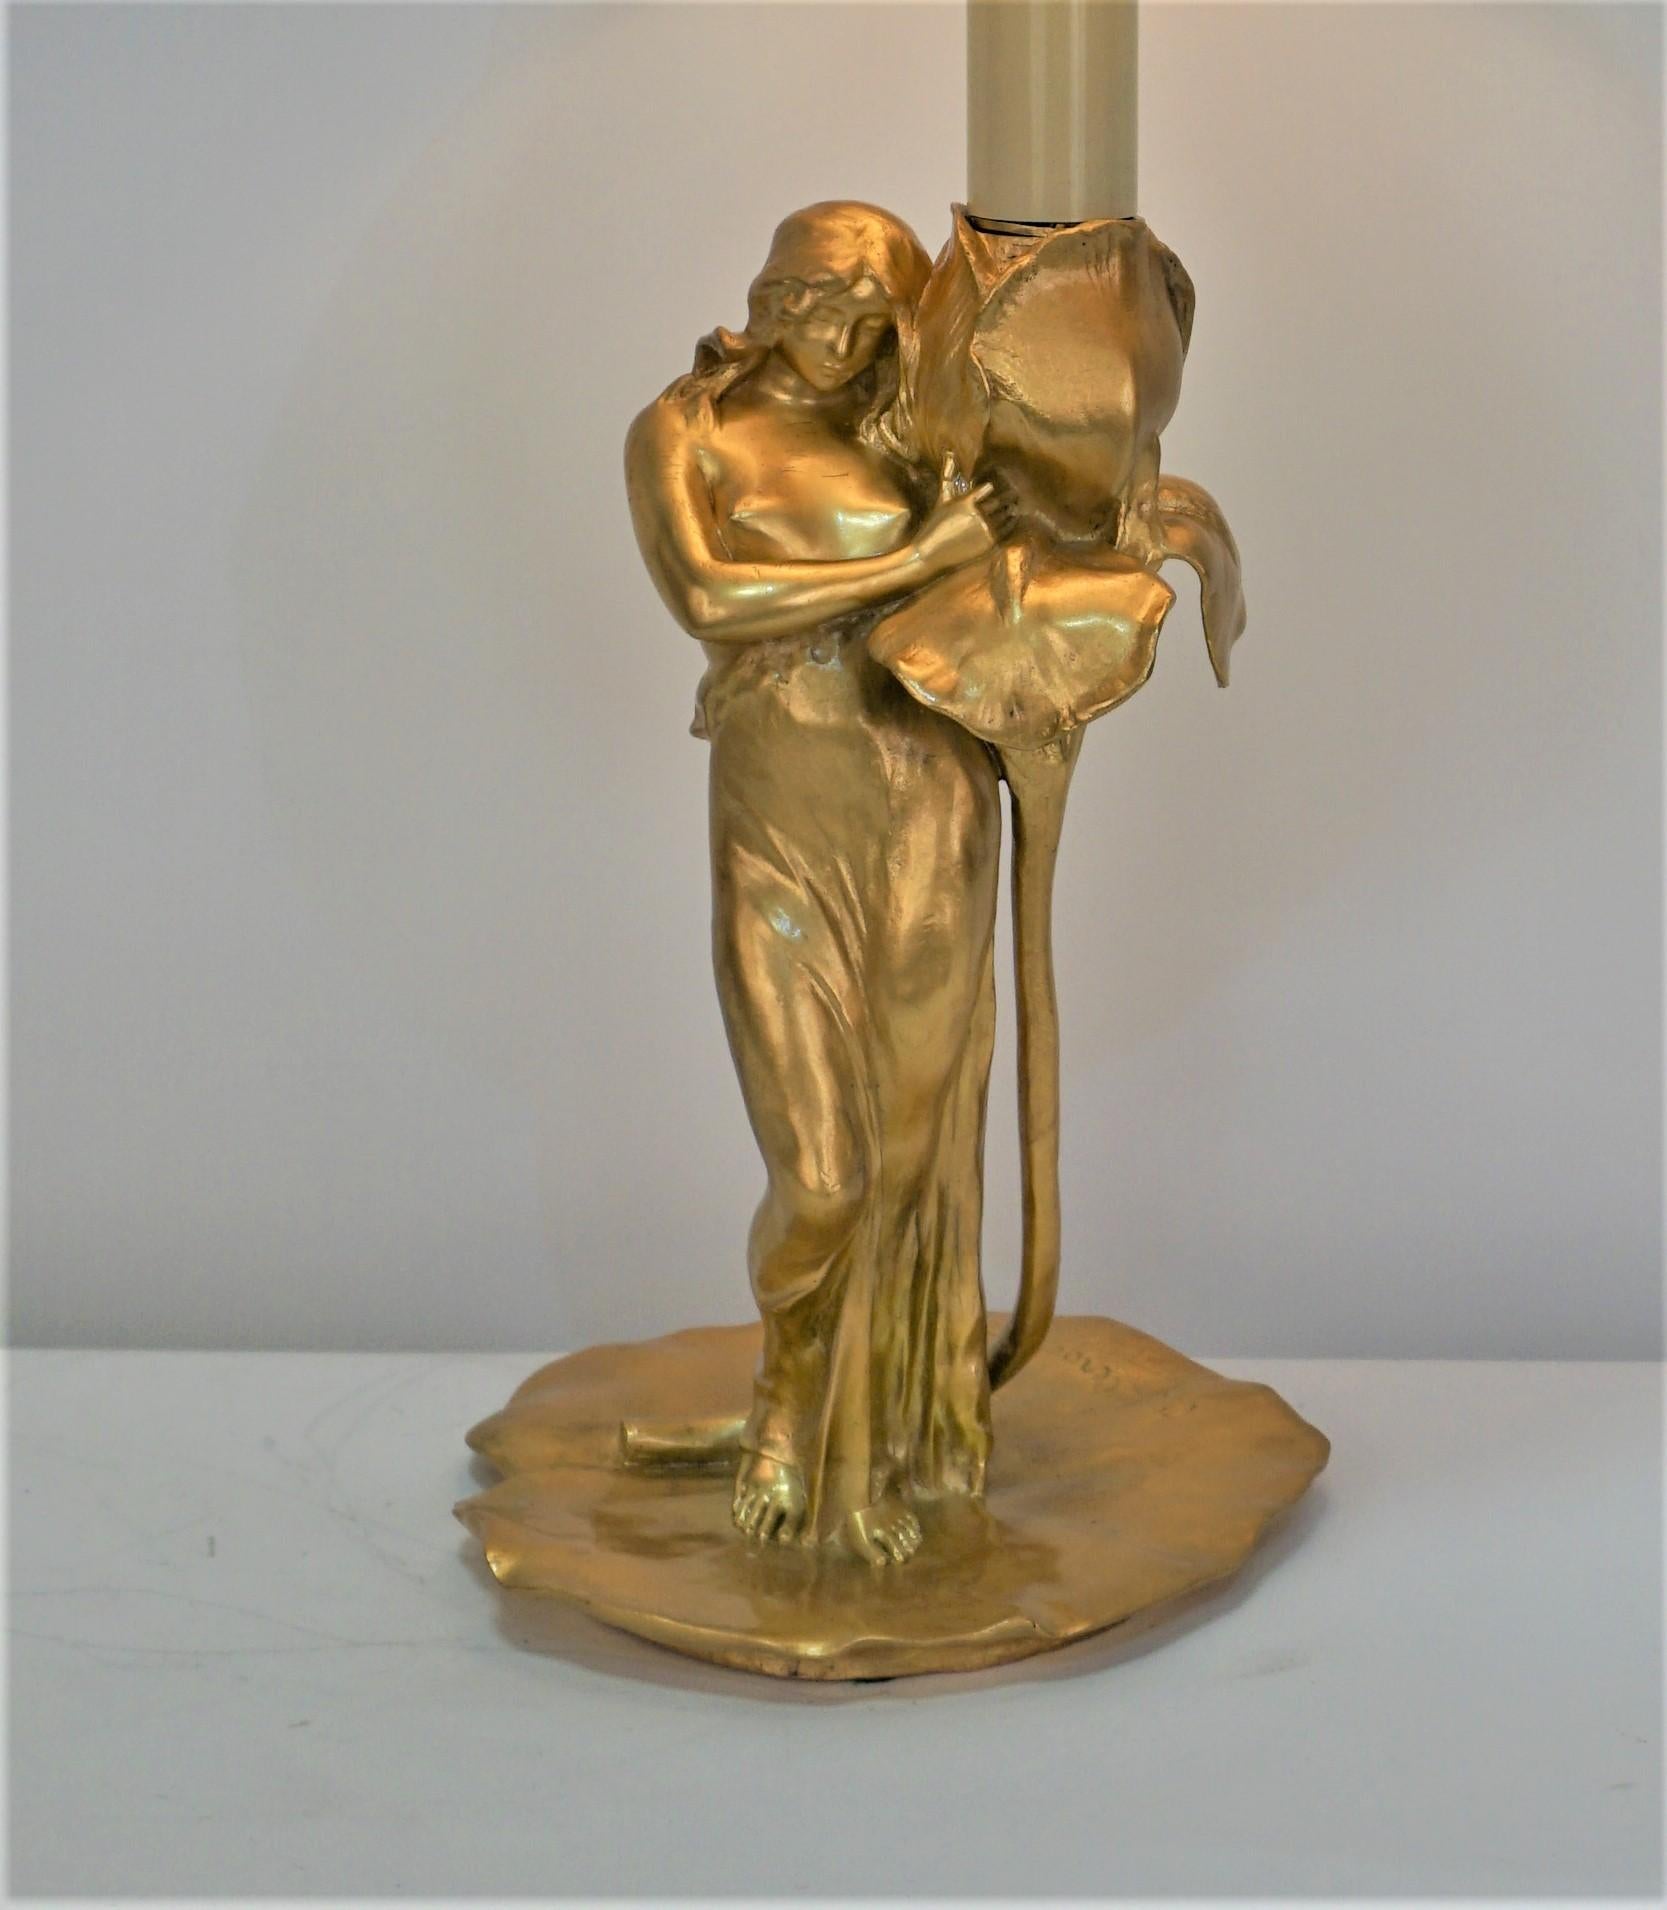 Beau chandelier art nouveau en bronze doré électrifié comme lampe de table par Alexandre Clerget c1900
Cette lampe est en très bon état et équipée d'un abat-jour en soie.

 